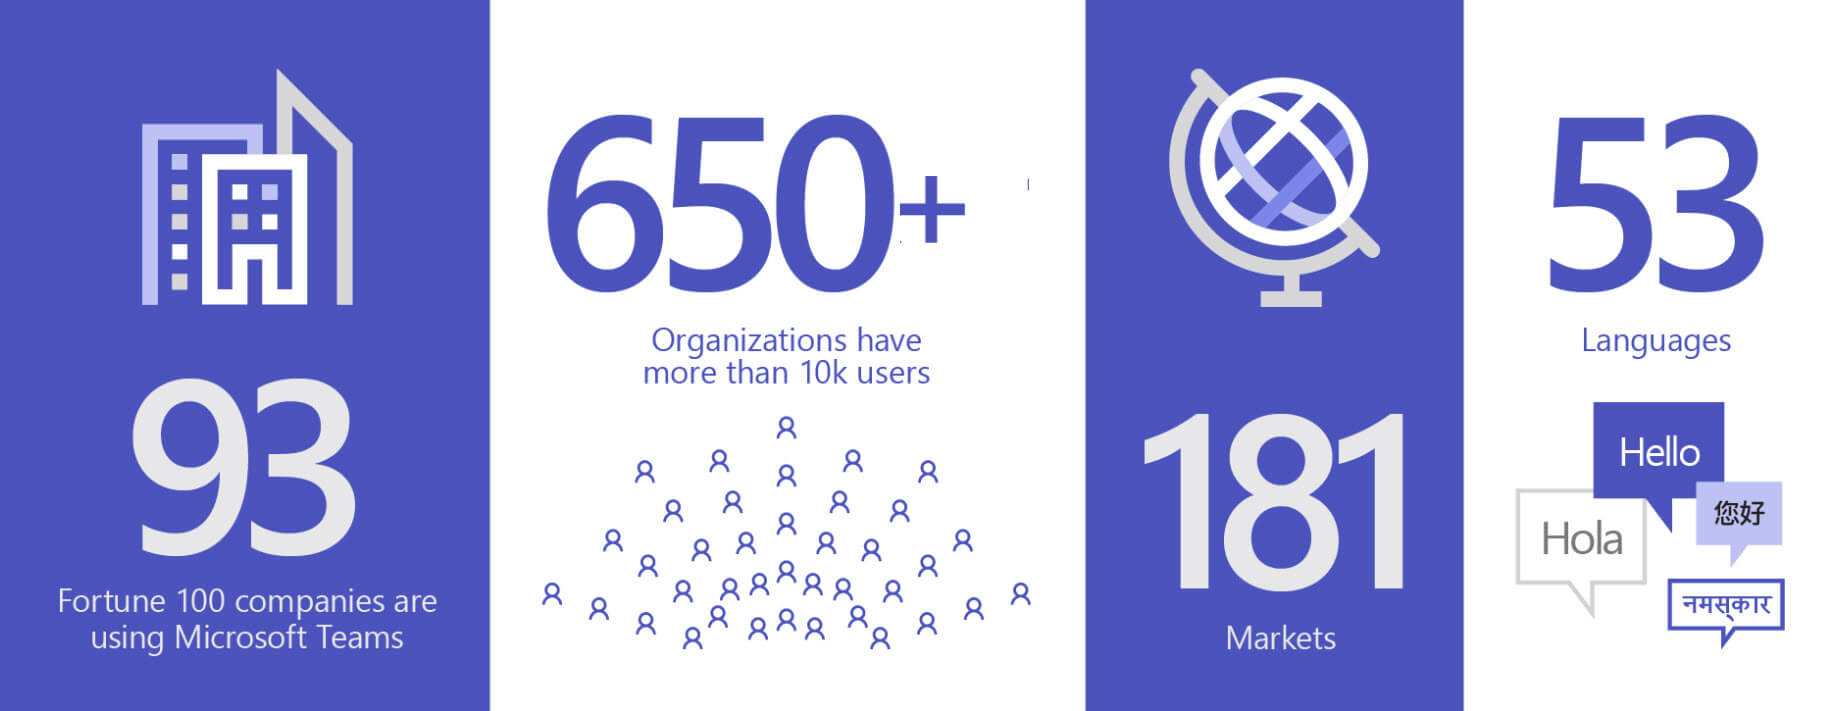 Imagen en la que se muestran 93 organizaciones que usan Teams; más de 650 empresas tienen más de 10 000 usuarios, en 181 mercados y 53 idiomas.